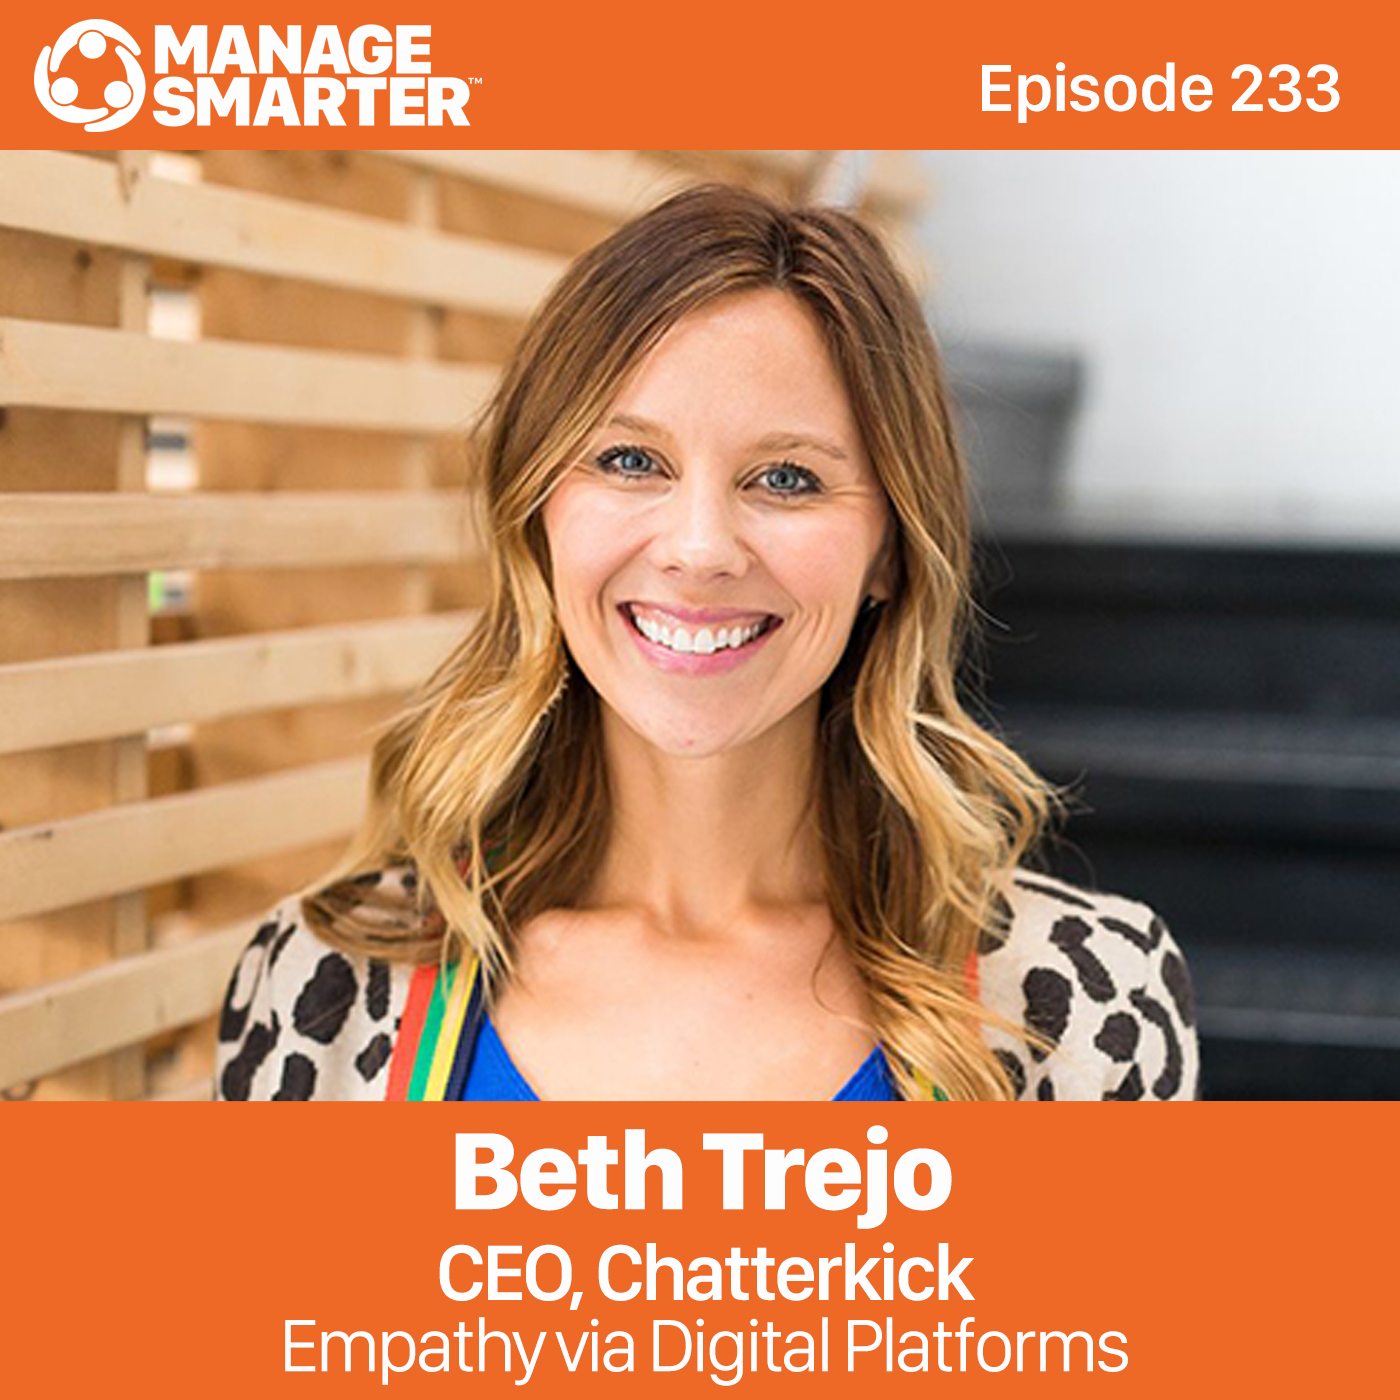 Manager Smarter Episode 233 - Beth Trejo CEO, Chatterkick - Empathy via Digital Platforms